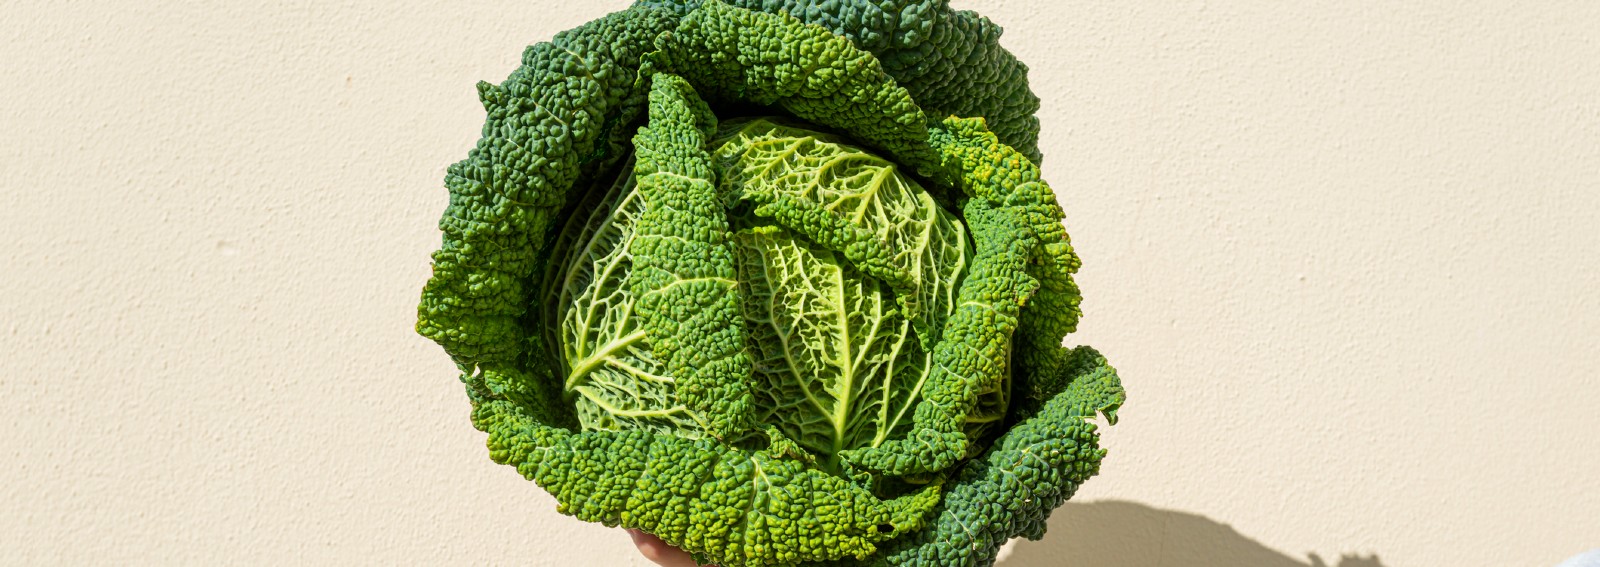 cabbage-food-health-diet